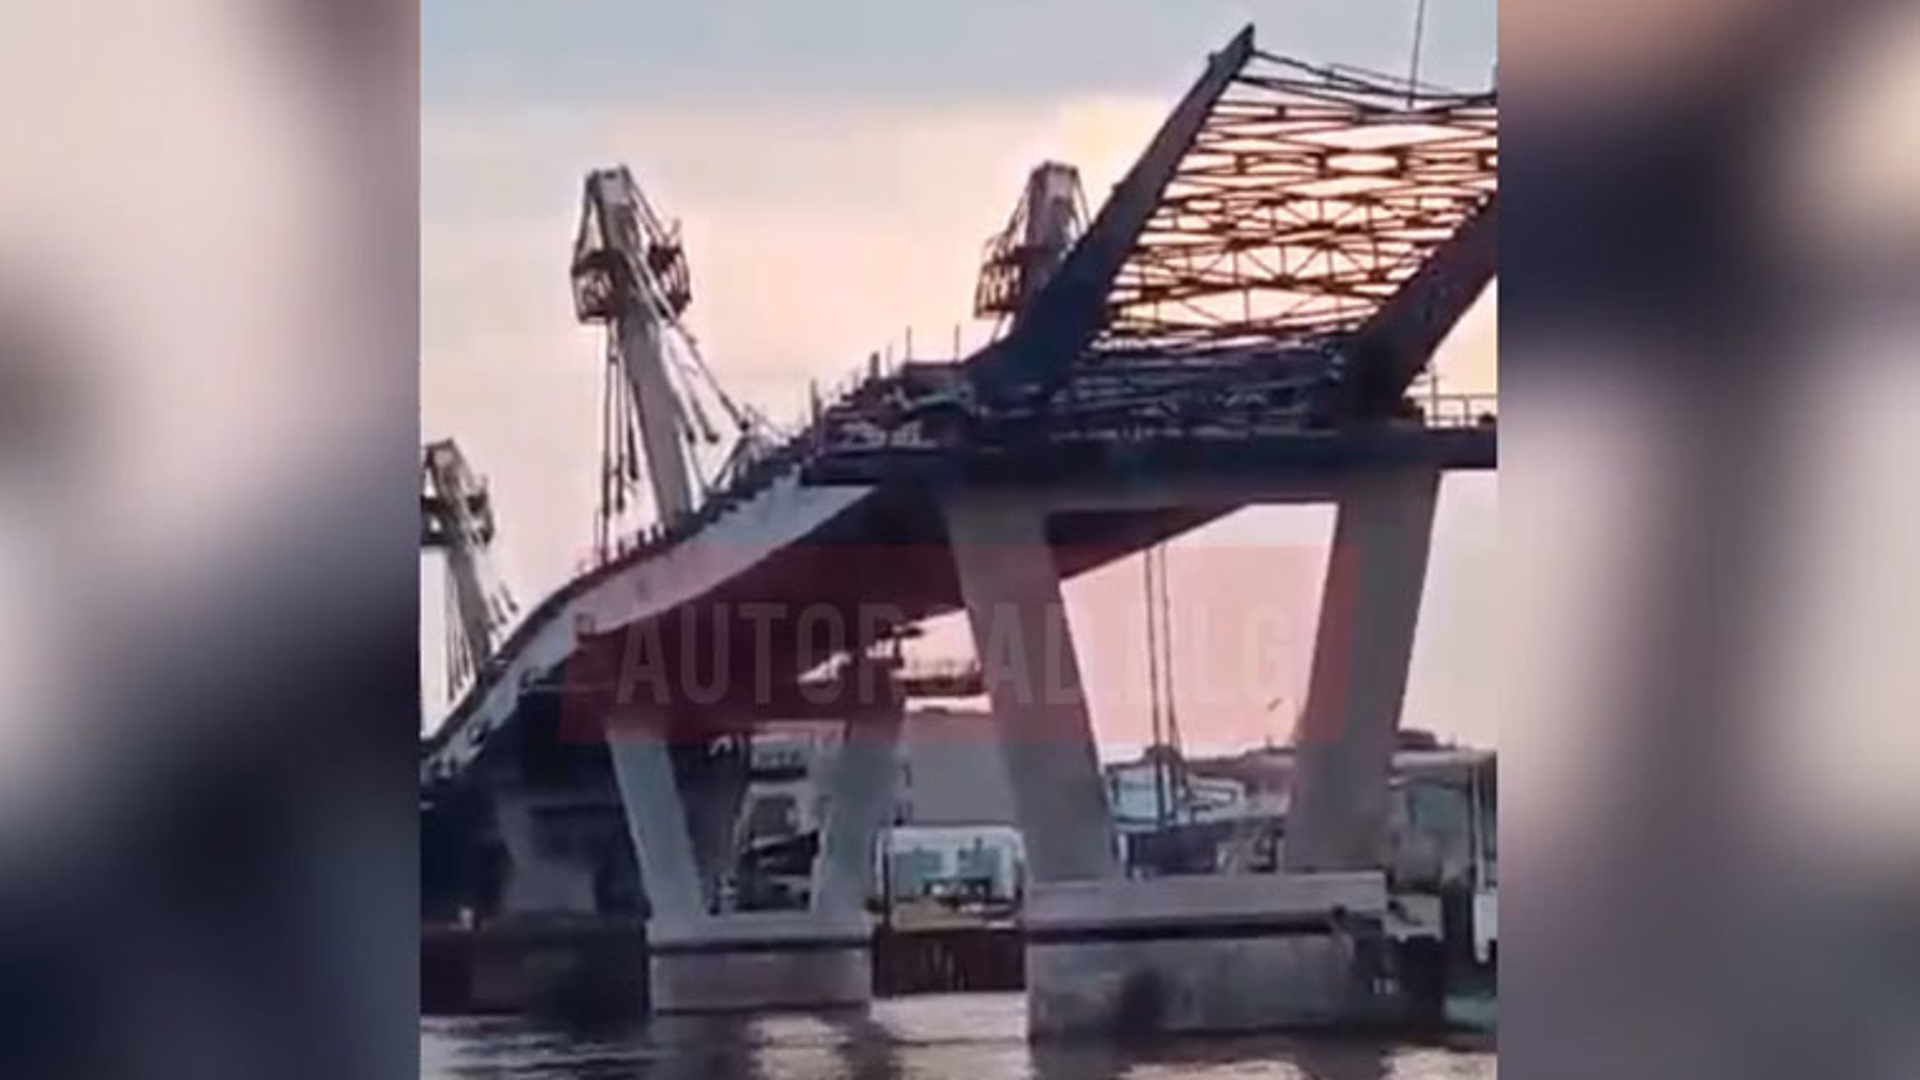 Строительство моста дальний восток